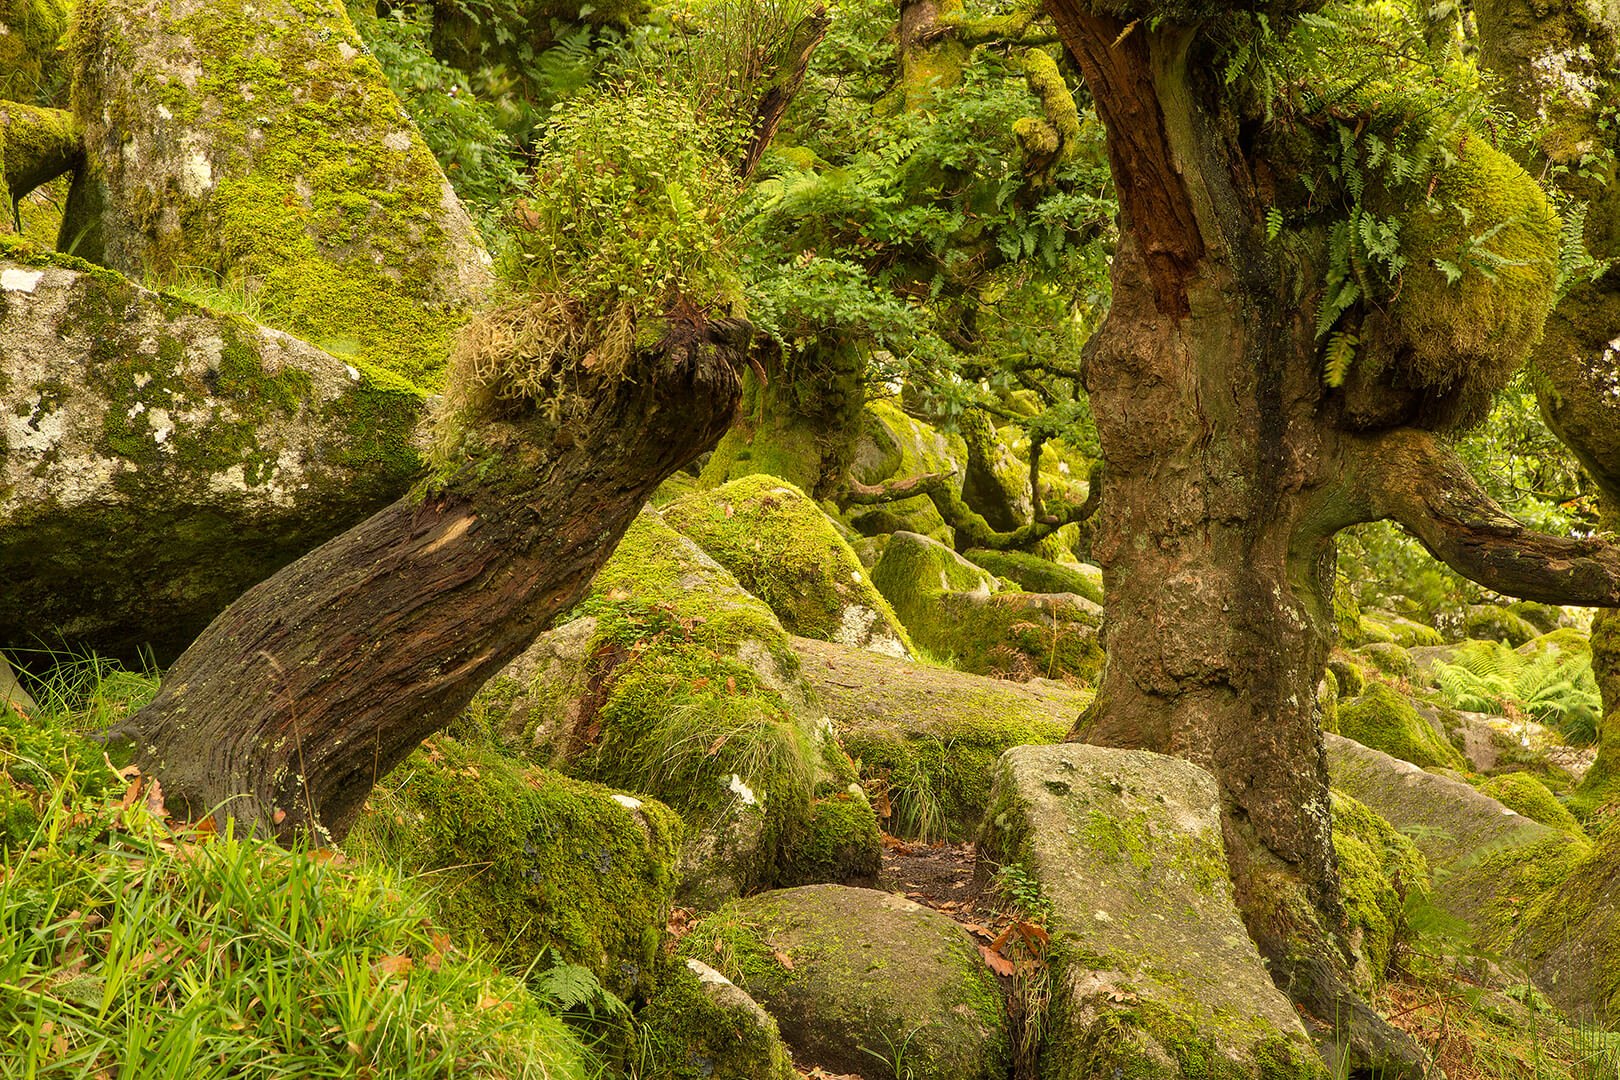 Wistman's Wood on my Dartmoor Tors and Hidden Valleys Photography Tour